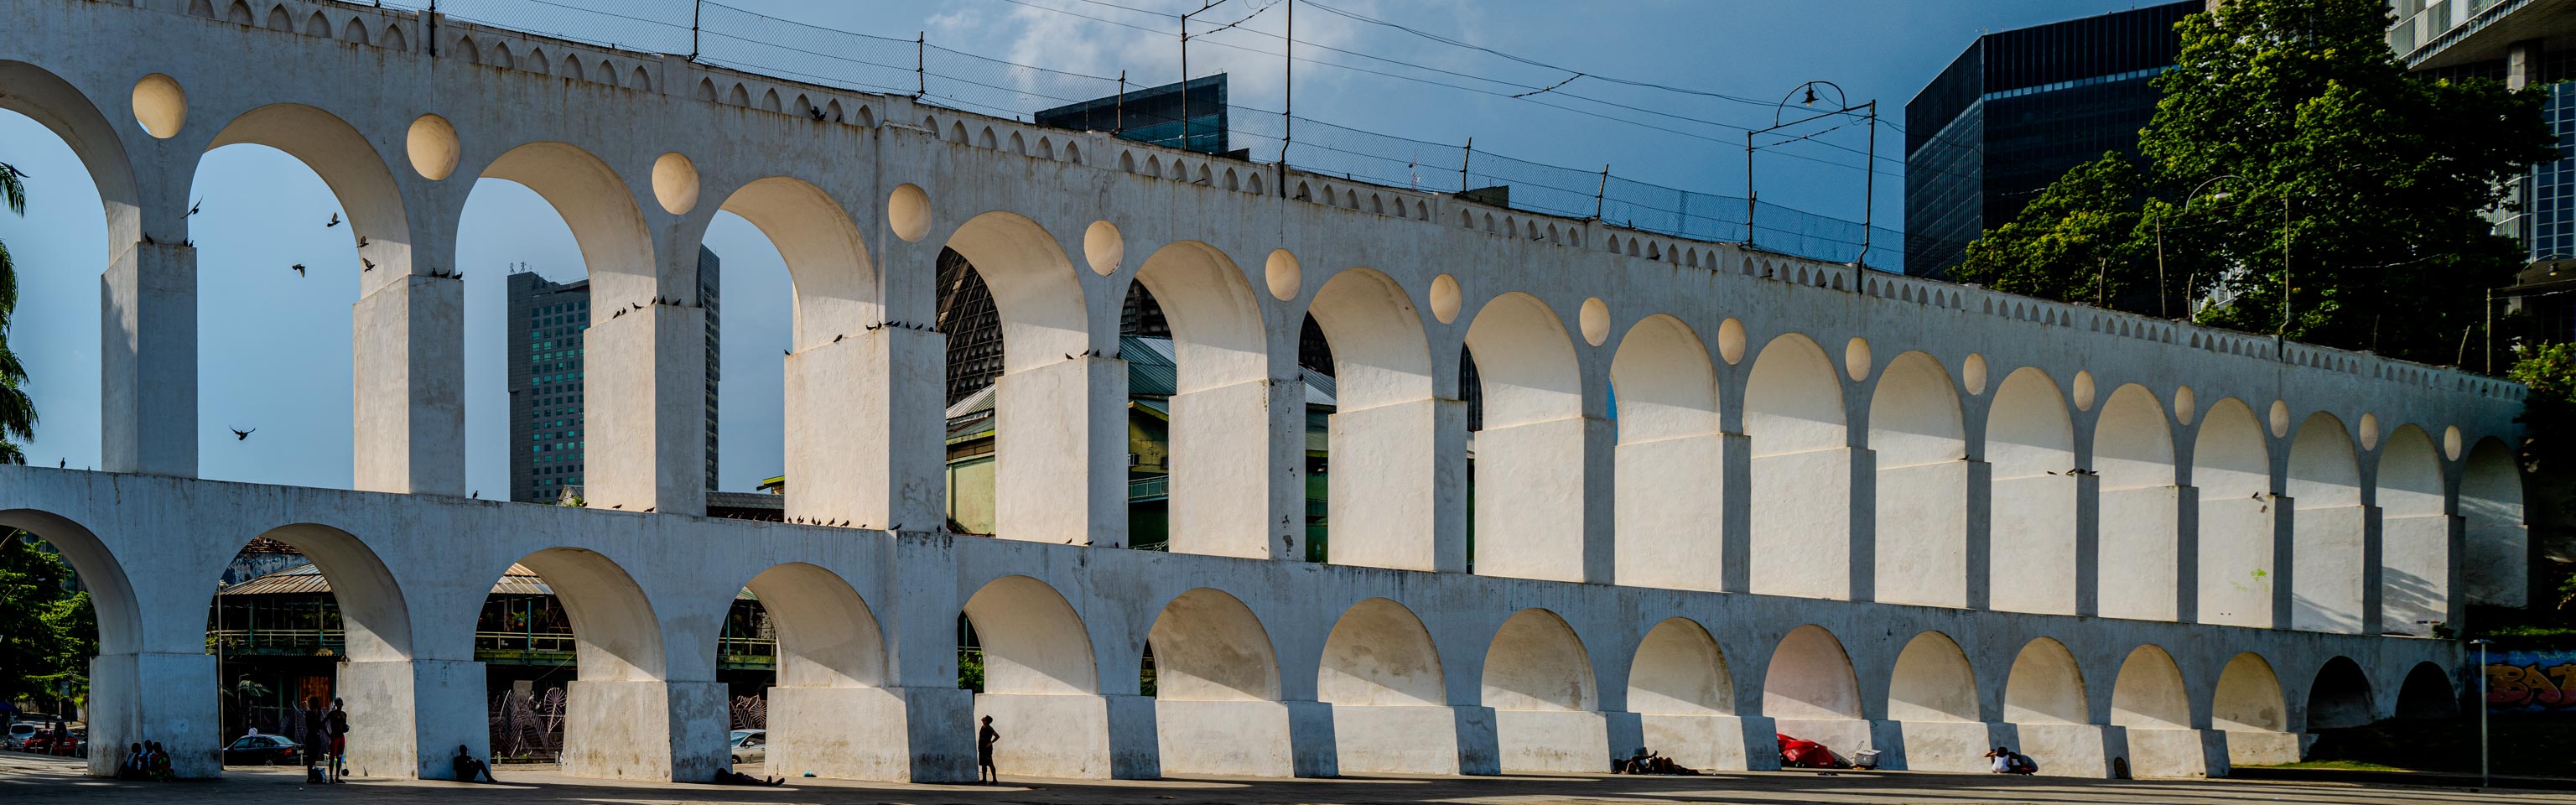 Carioca Aqueduct, Rio de Janeiro, Brasilien